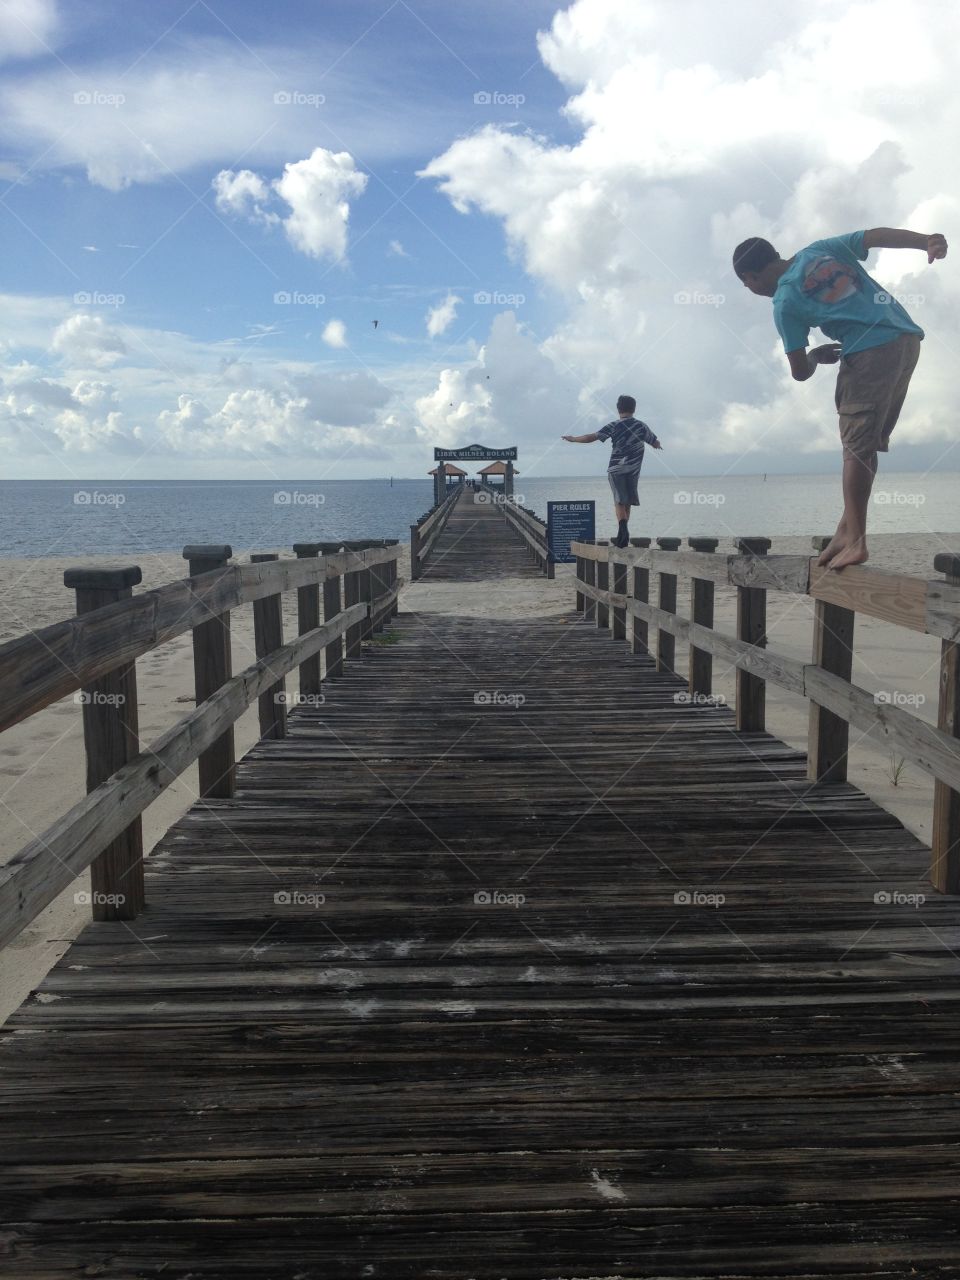 People walking on wooden pier